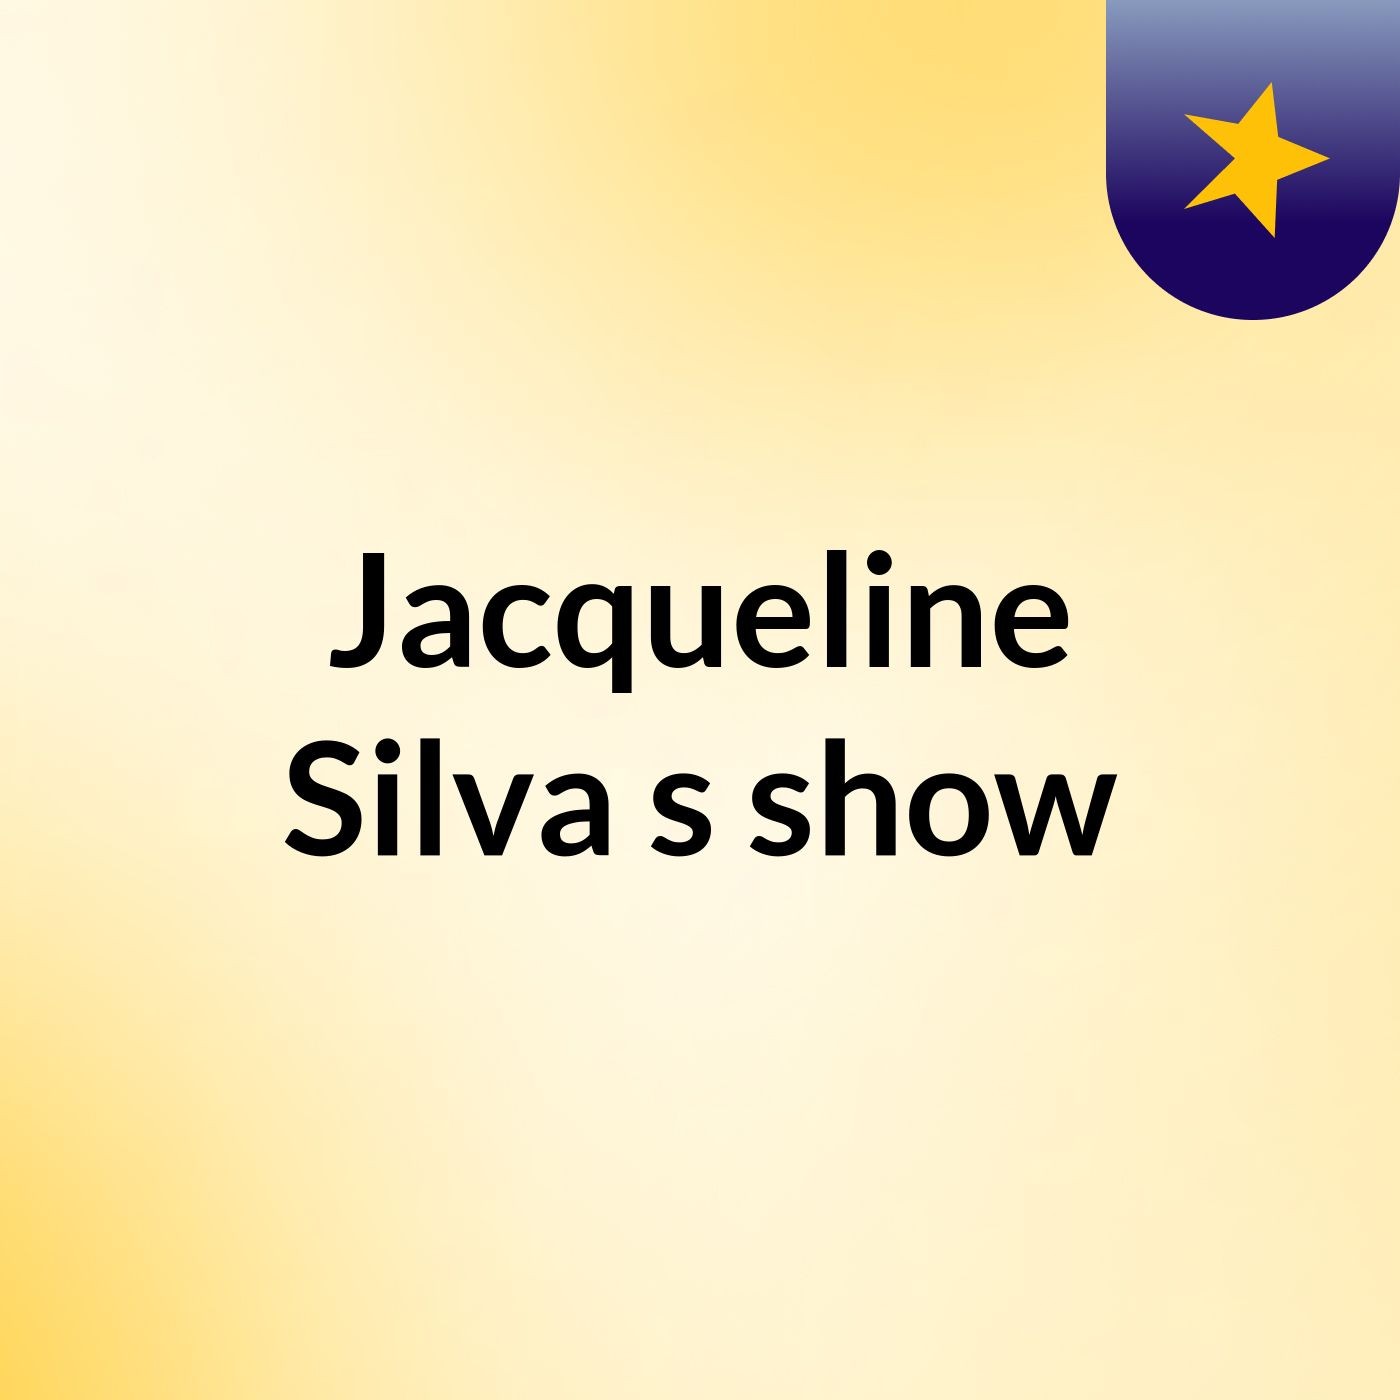 Jacqueline Silva's show